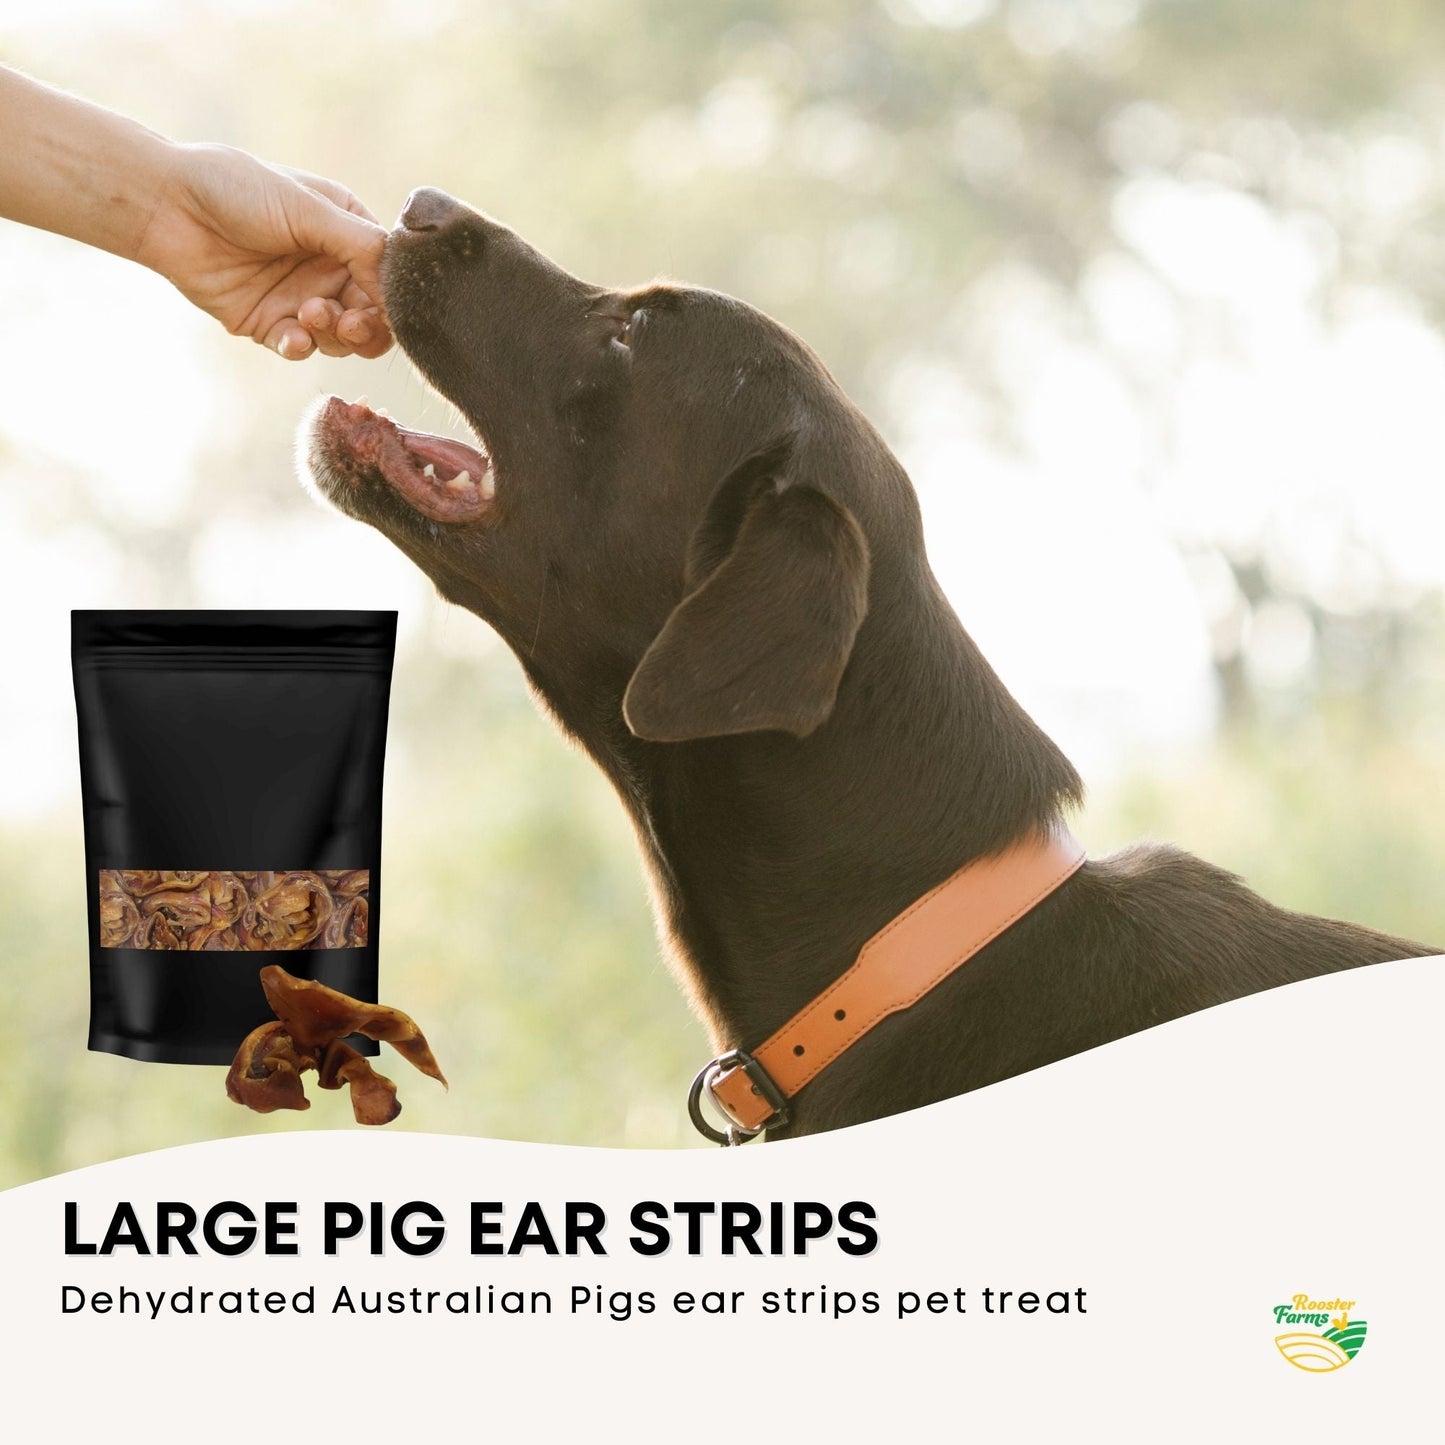 400g Dog Treat Pig Ear Strips - Dehydrated Australian Healthy Puppy Chew